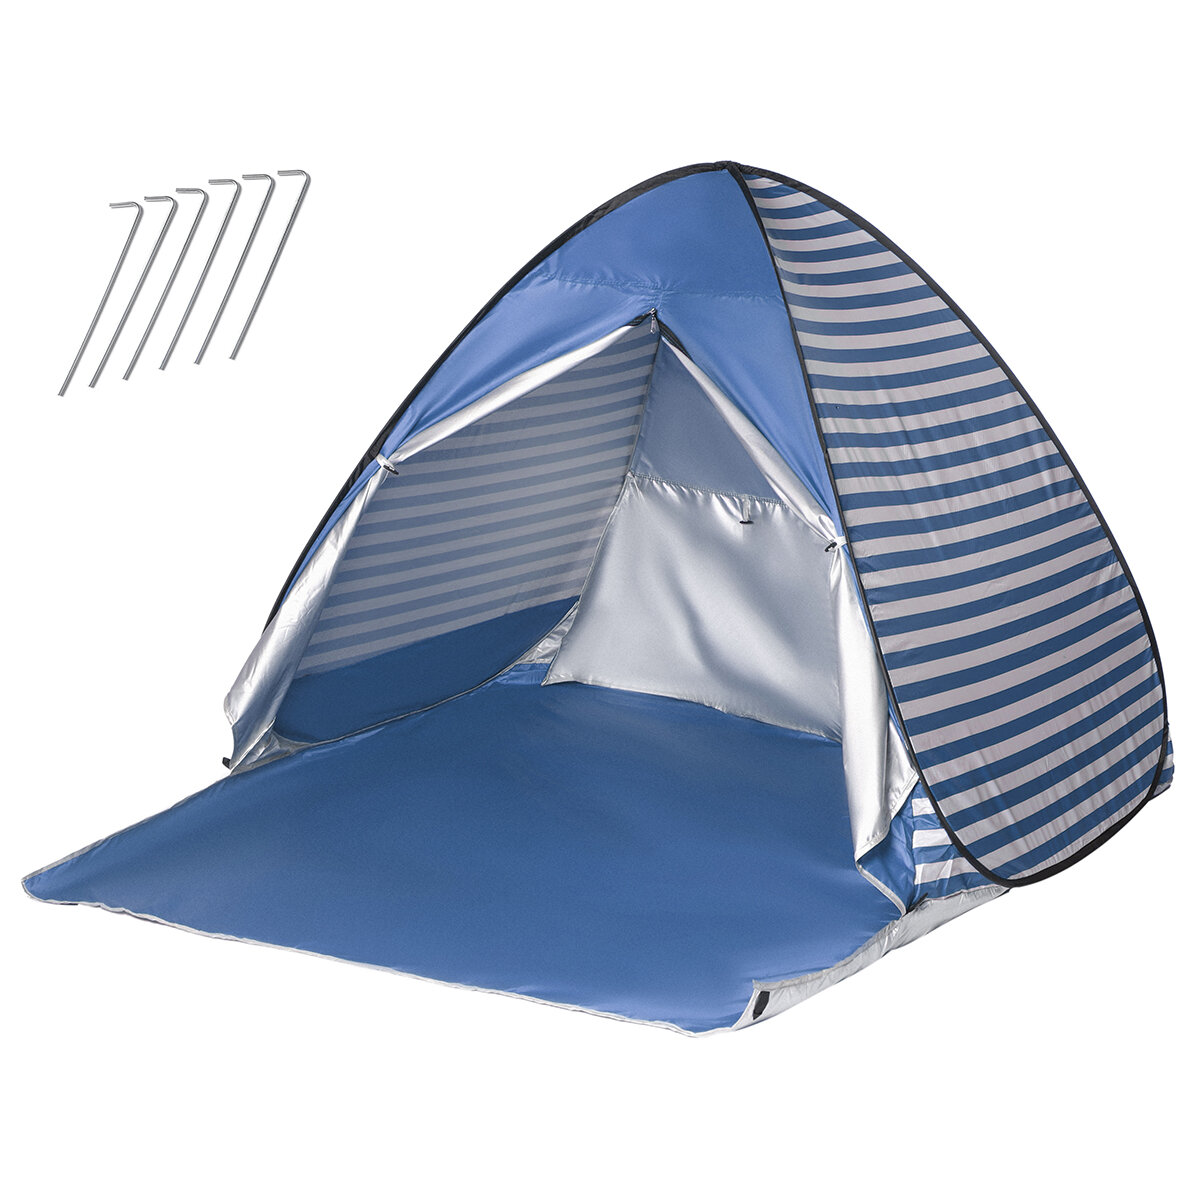 2人のための屋外のキャンプの防水浜のテントの紫外線証拠の日よけのテントの携帯用自動折るテントの避難所